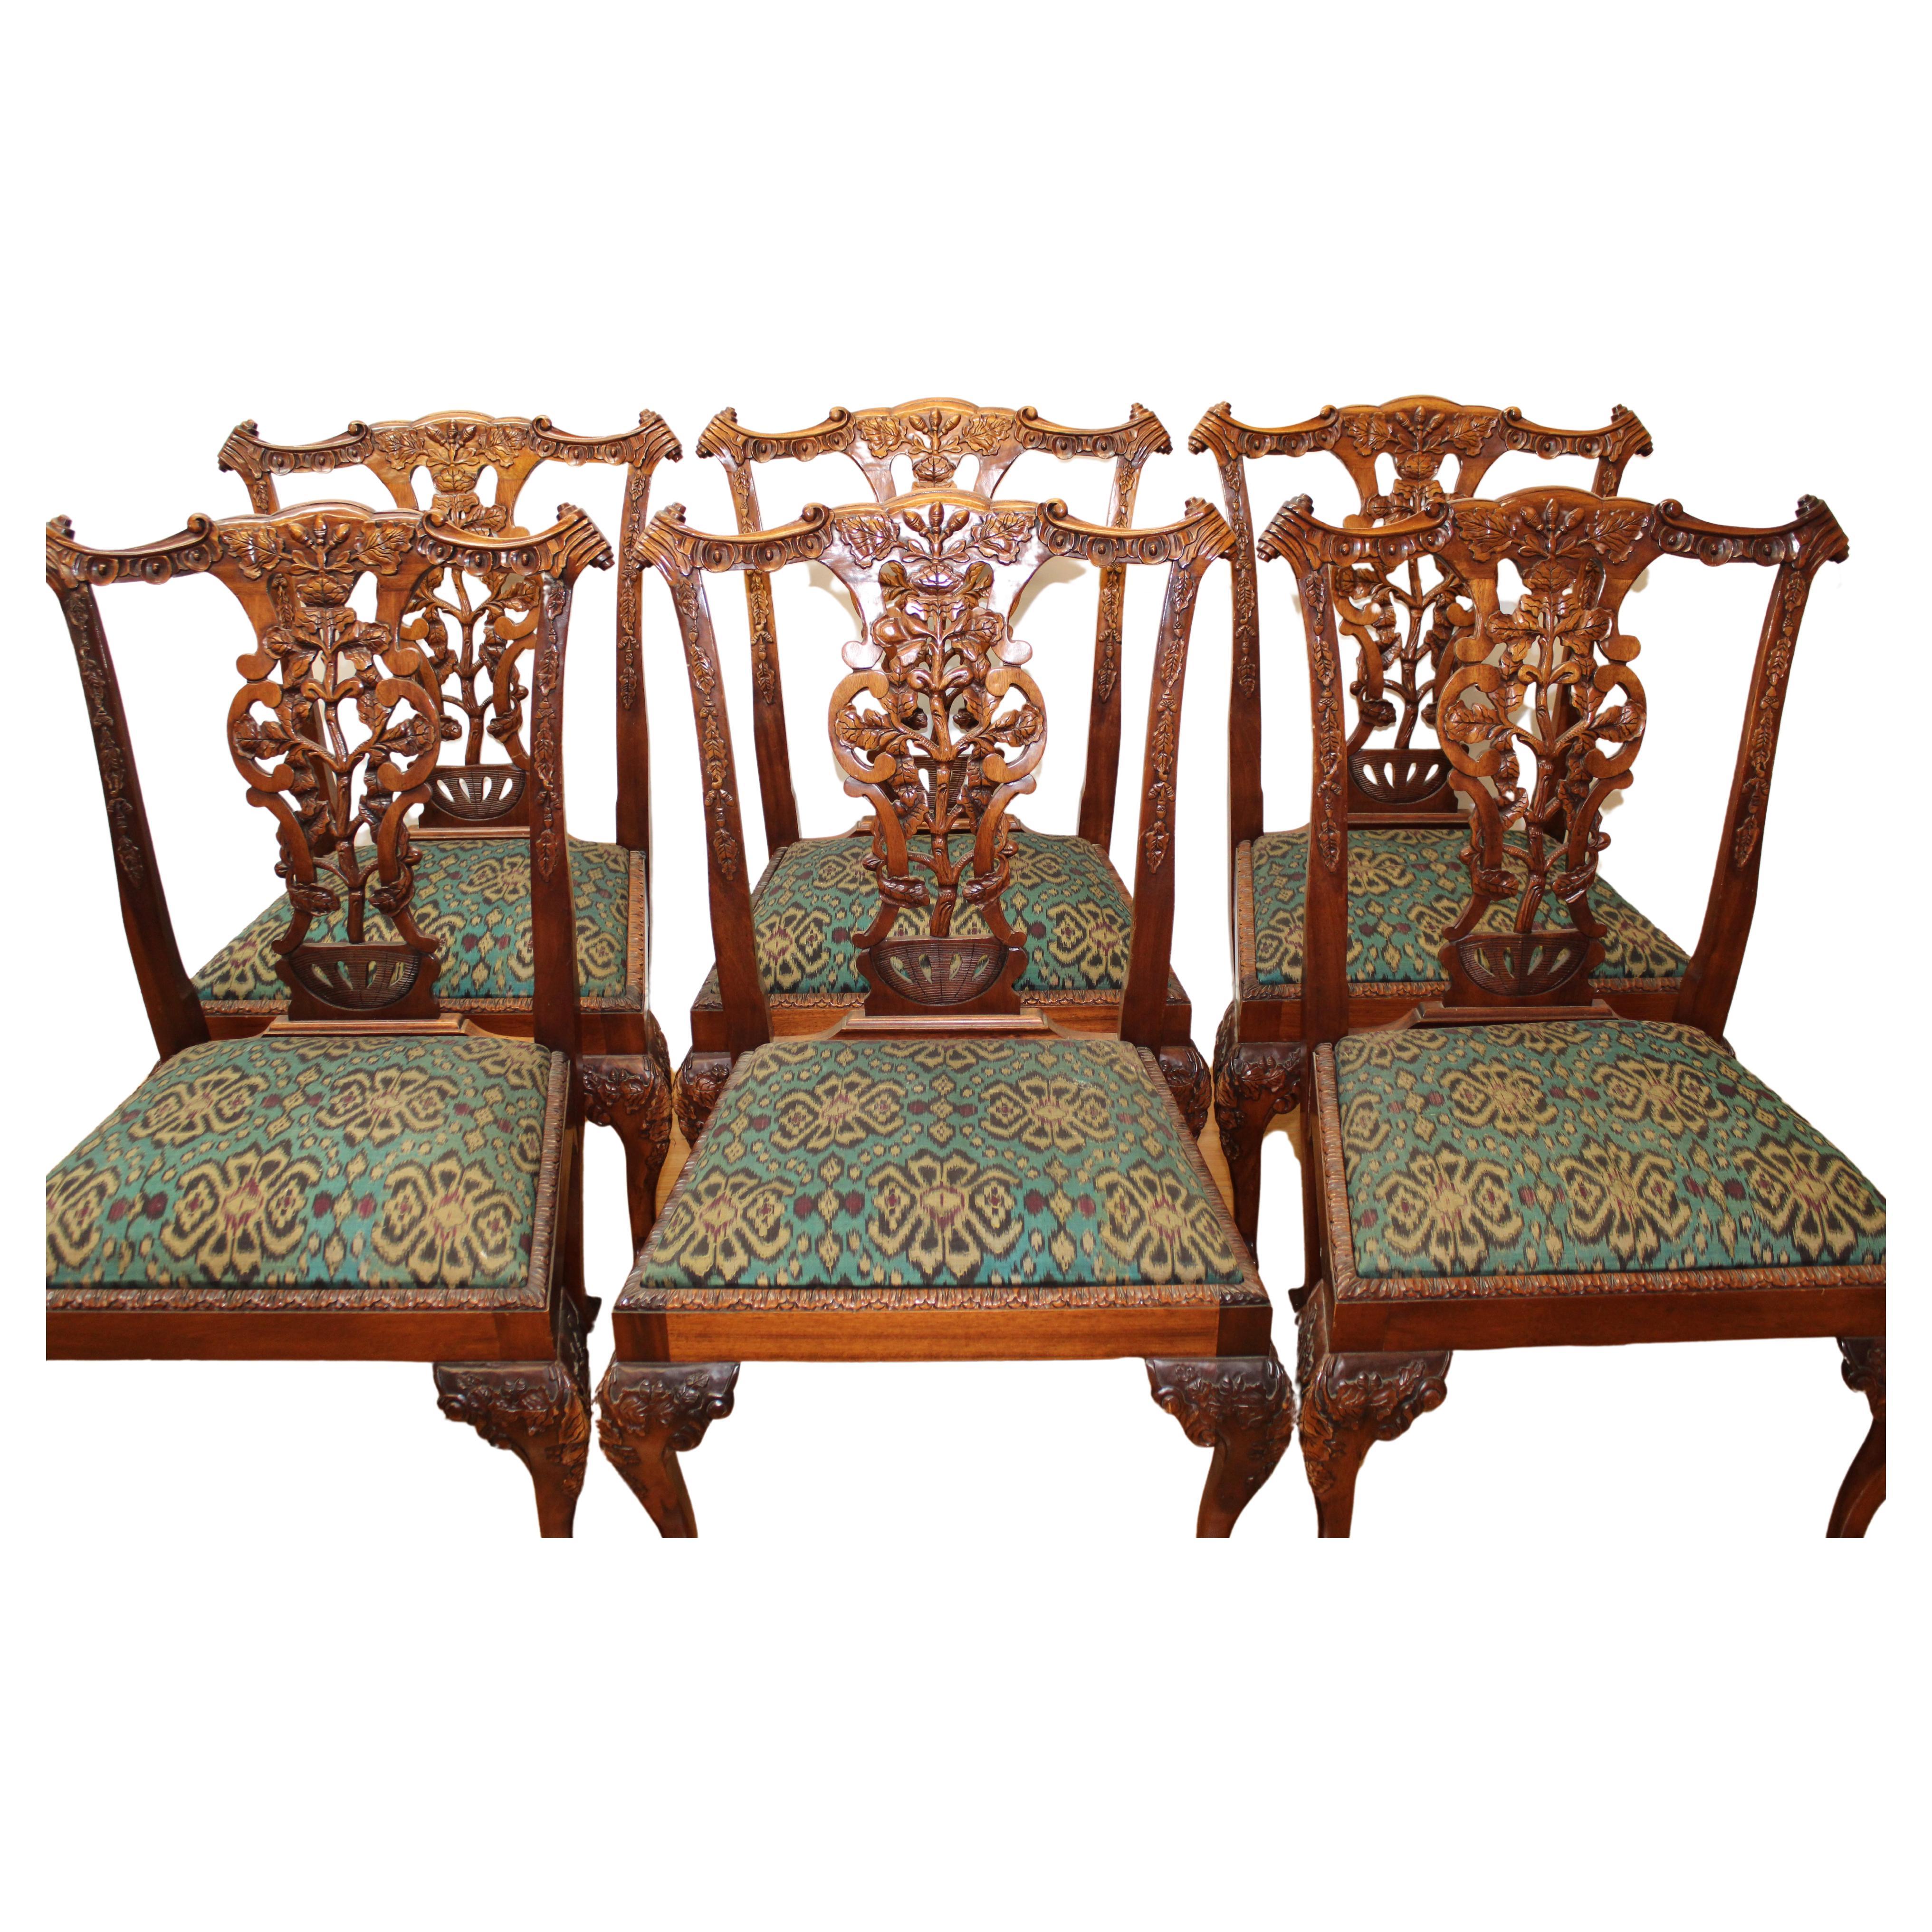 C. début du 20e siècle

Ensemble de 6 chaises d'appoint de style Chippendale, en bois sculpté et orné de glands et de feuilles, avec pieds à boule et griffes.